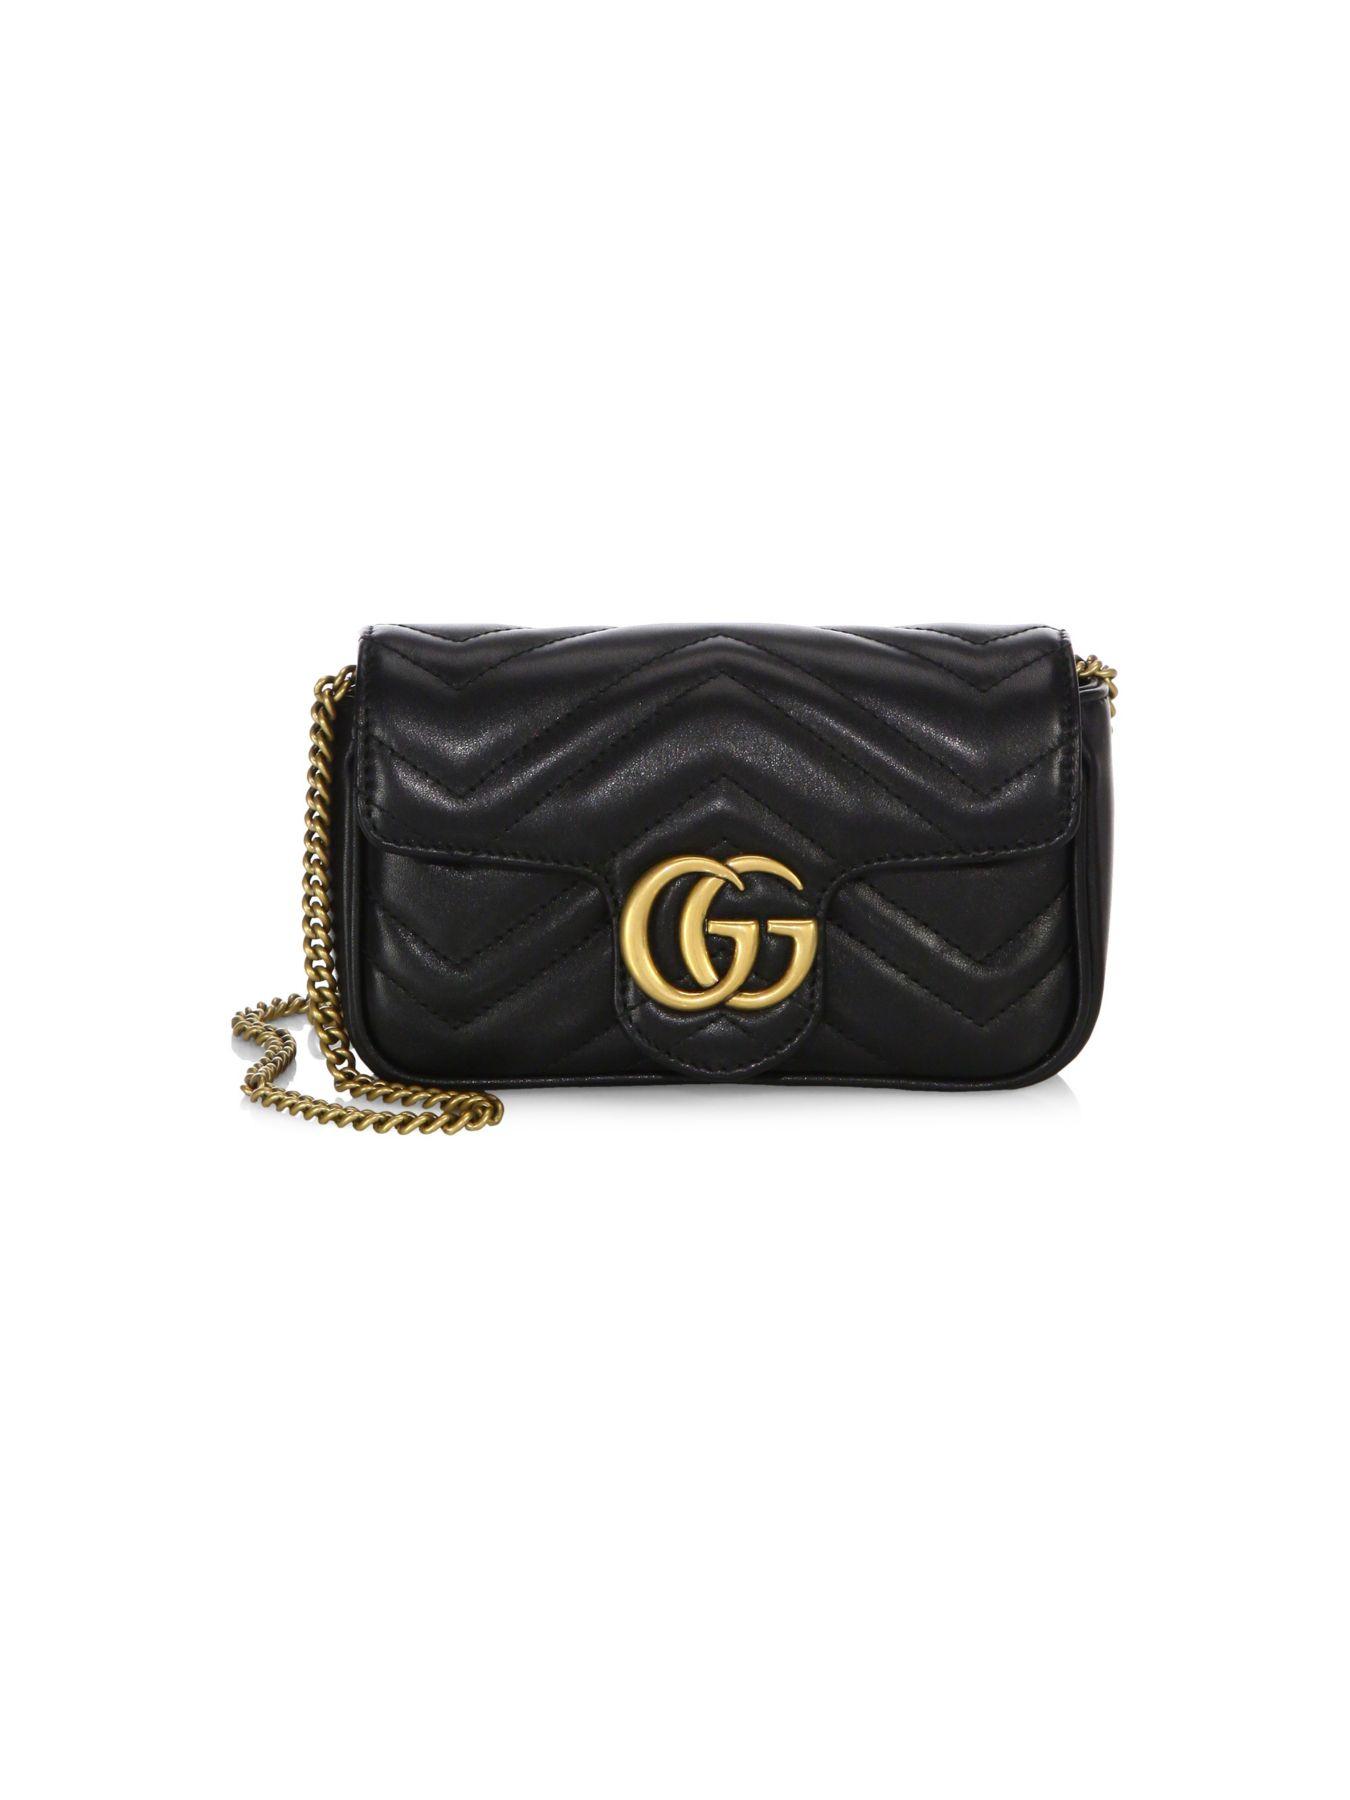 Gucci GG Marmont Matelasse Leather Super Mini Bag in Nero (Black) - Lyst